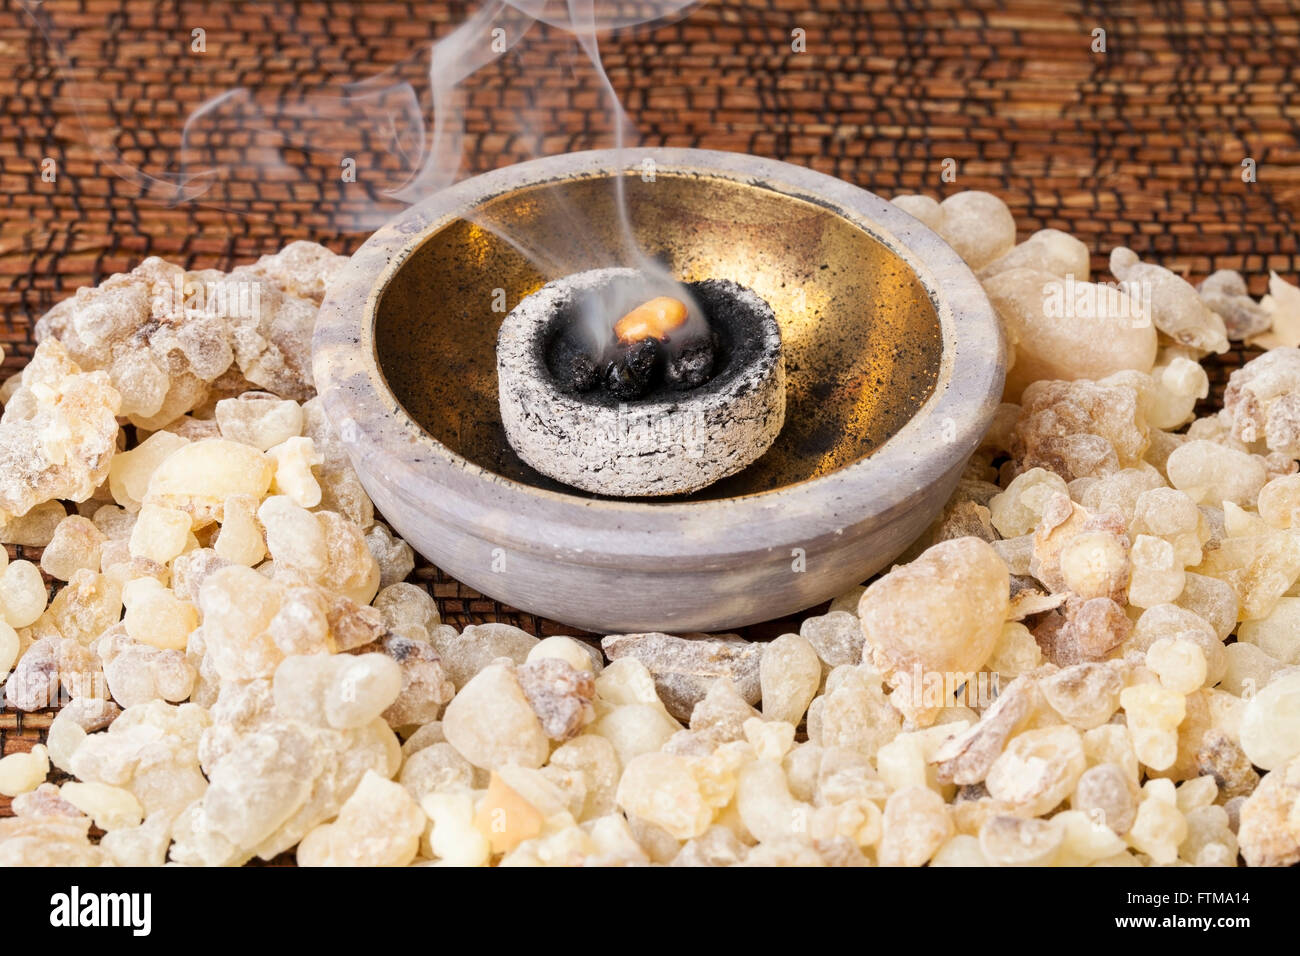 La combustion de l'encens sur un charbon chaud. L'encens est une résine aromatique, utilisée pour les rites religieux, l'encens et des parfums. Banque D'Images